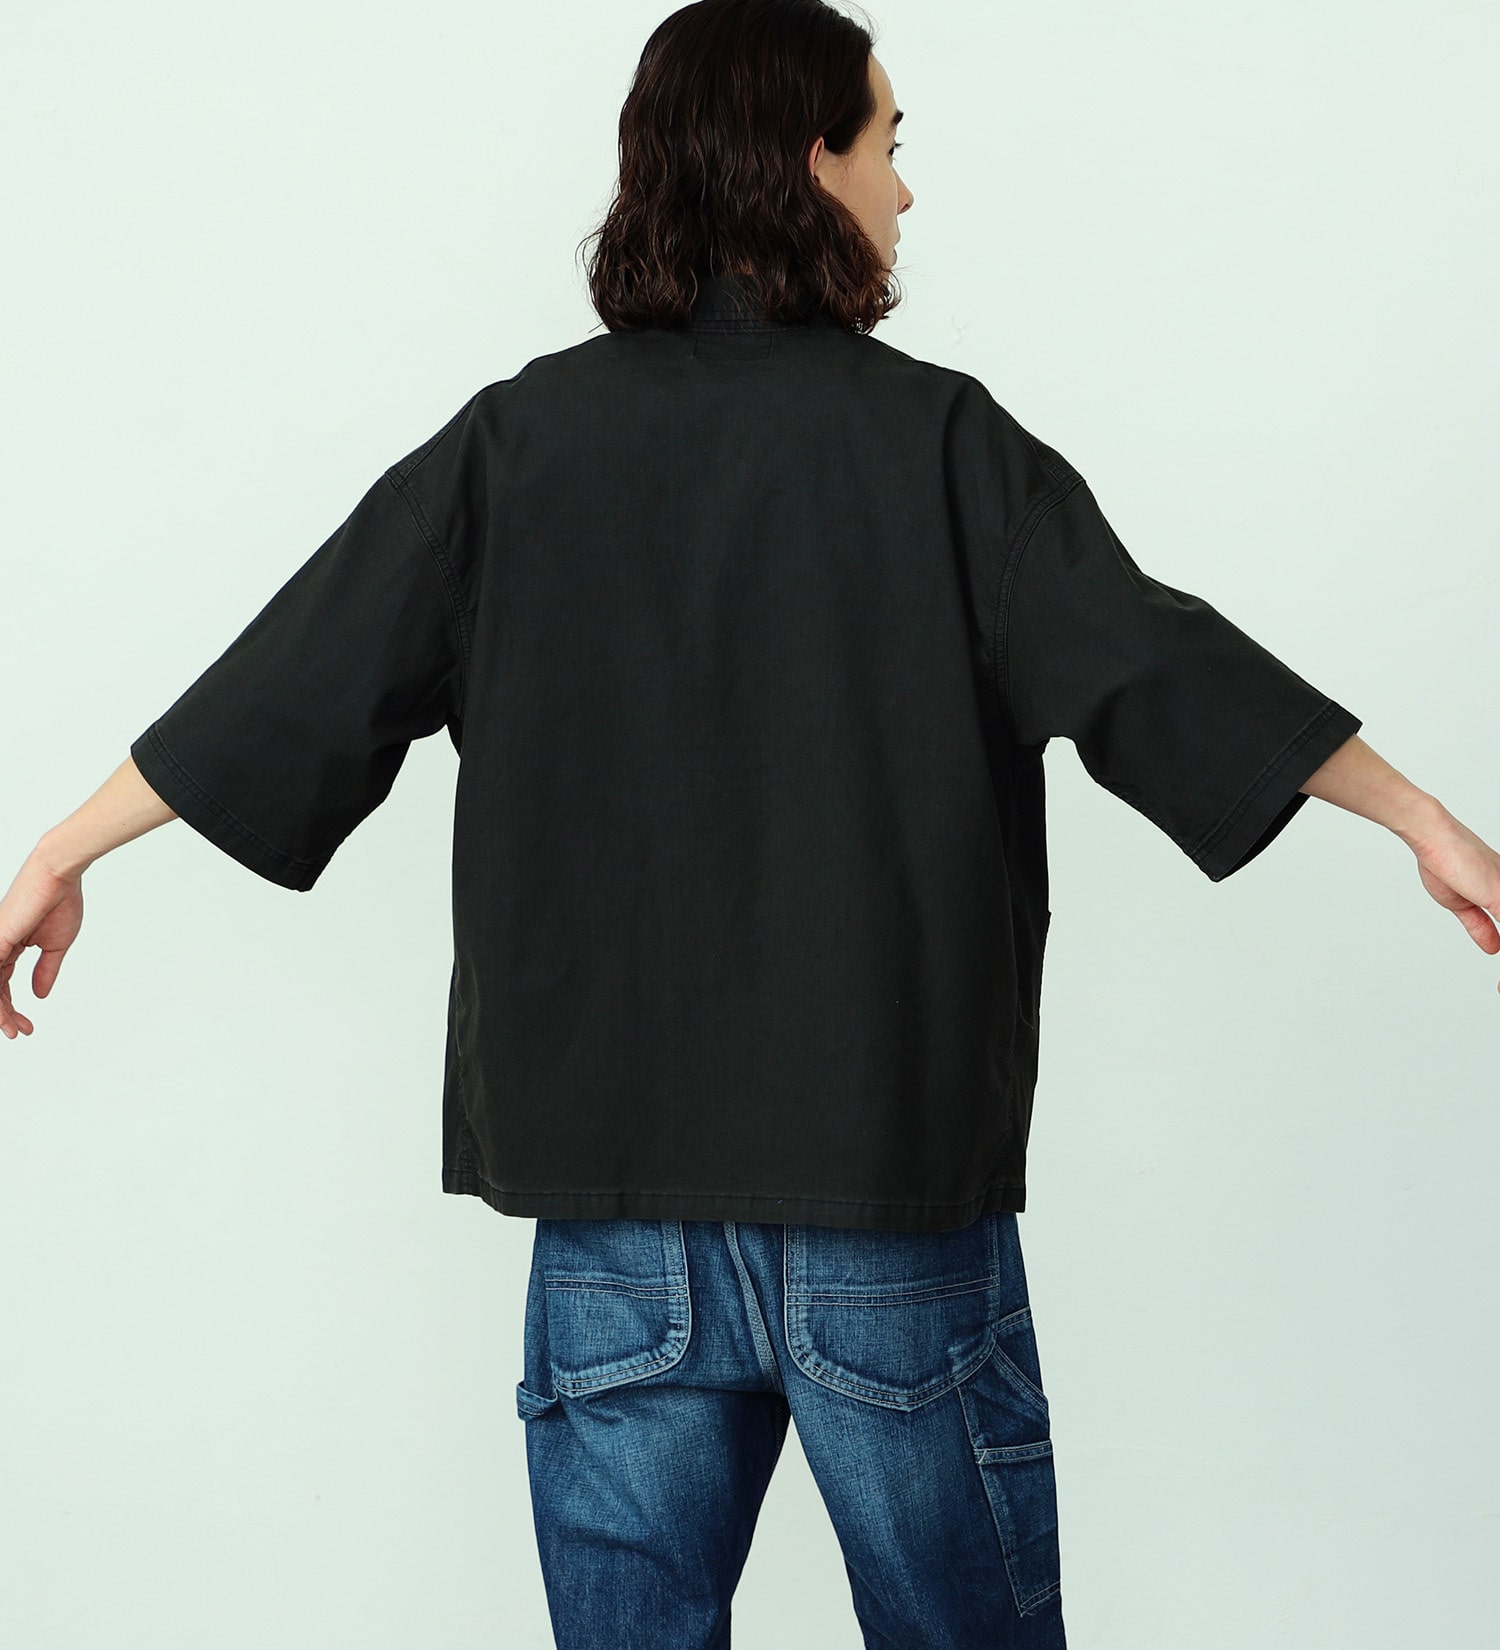 Lee(リー)のリネン混 LOCO ハーフスリーブシャツ|ジャケット/アウター/カバーオール/メンズ|ブラック